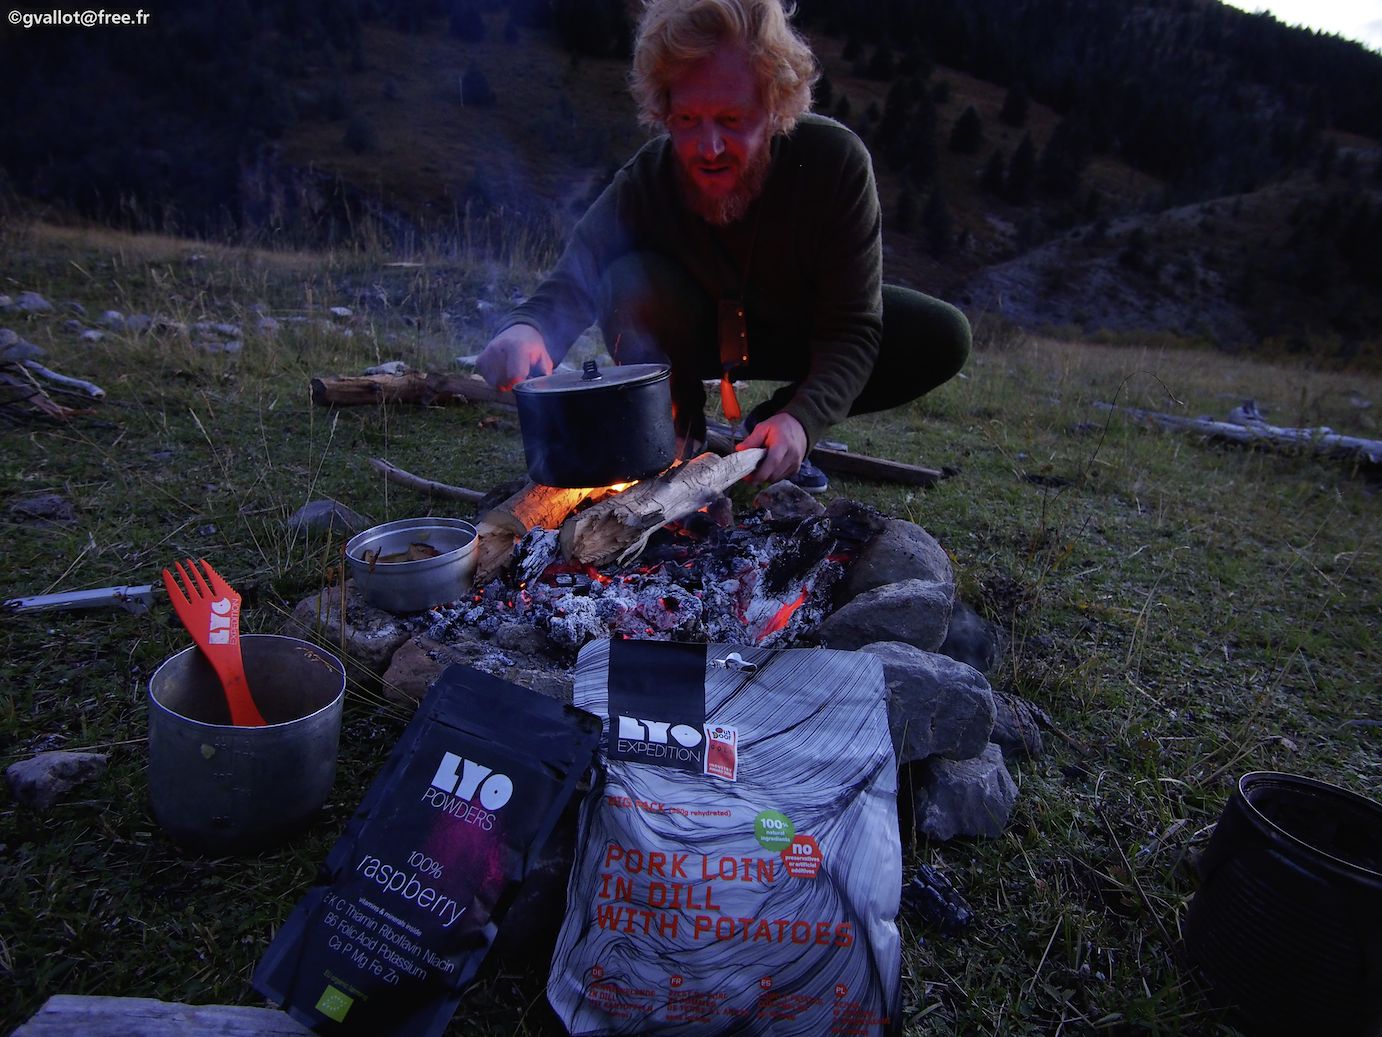 Preparing Lyofood meal at Campfire